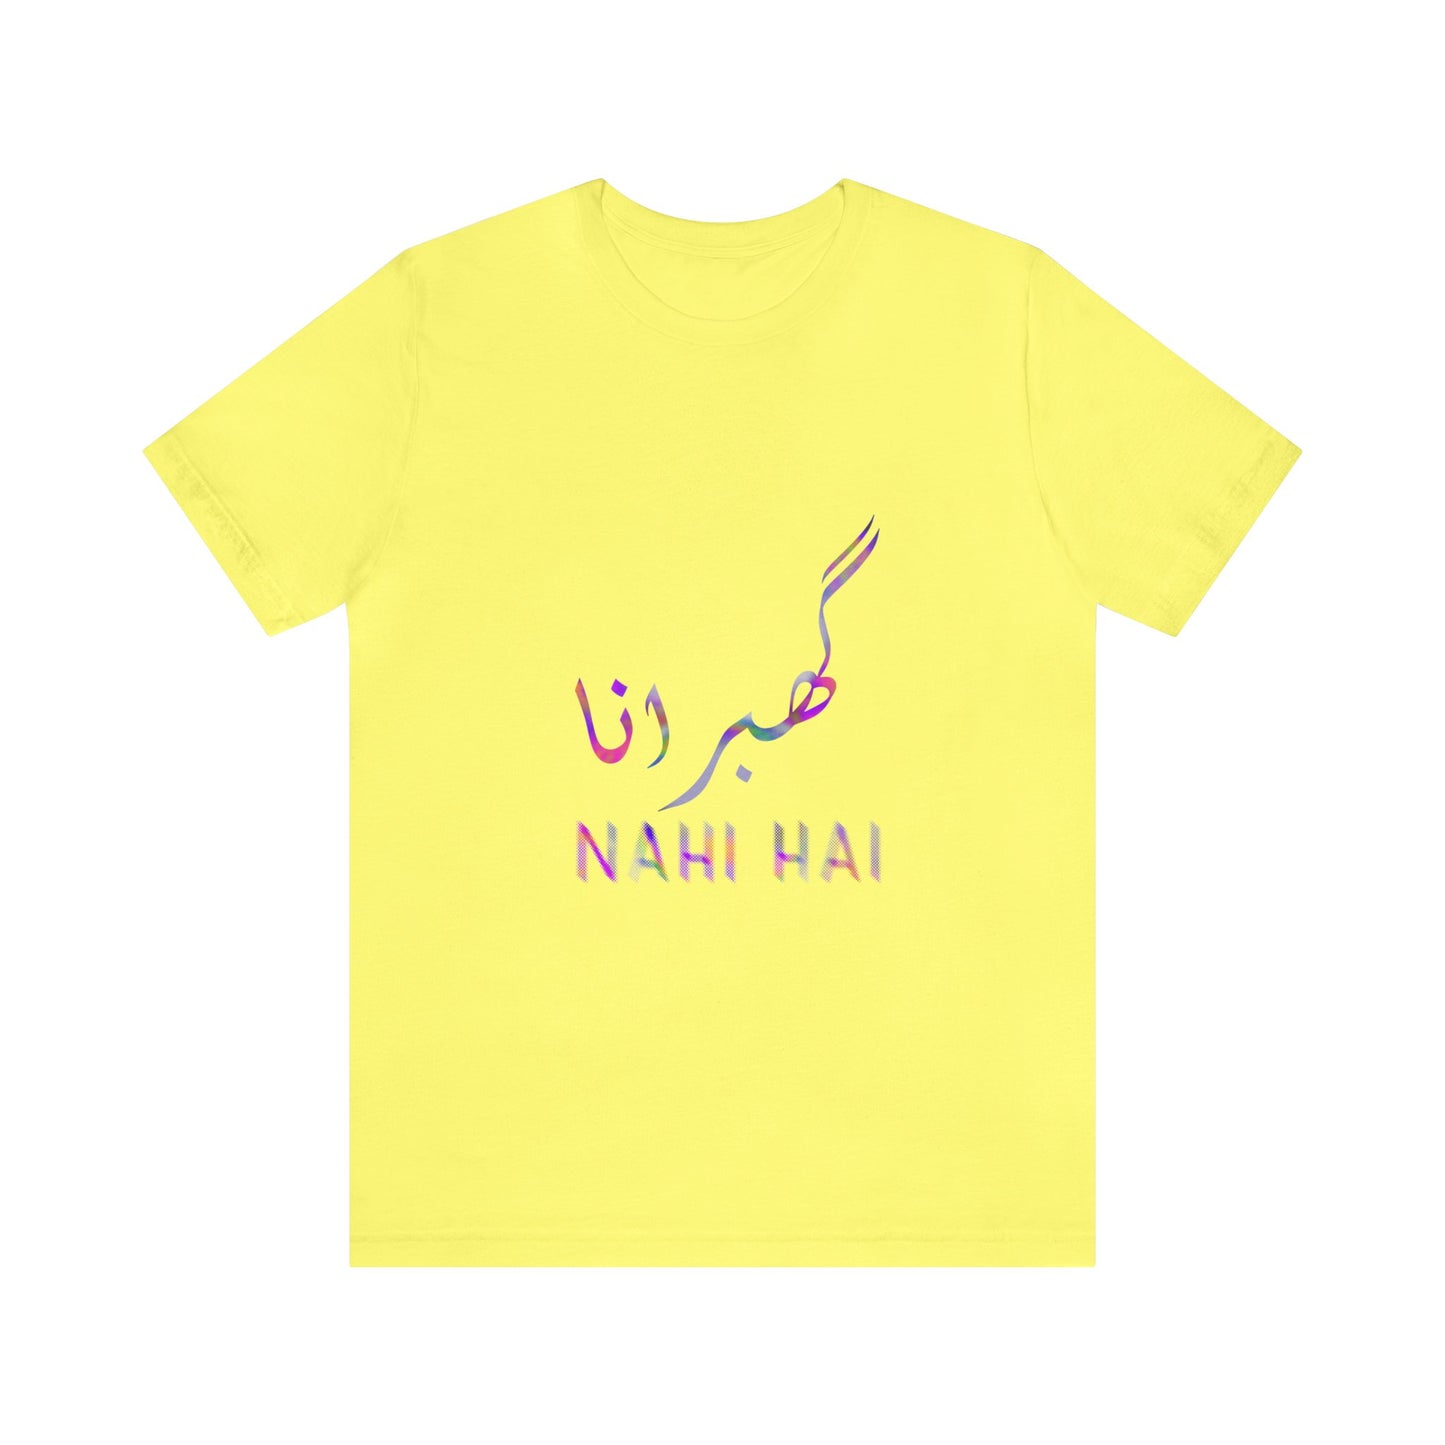 Ghabrana Nahi Hai Jersey Short Sleeve Tee